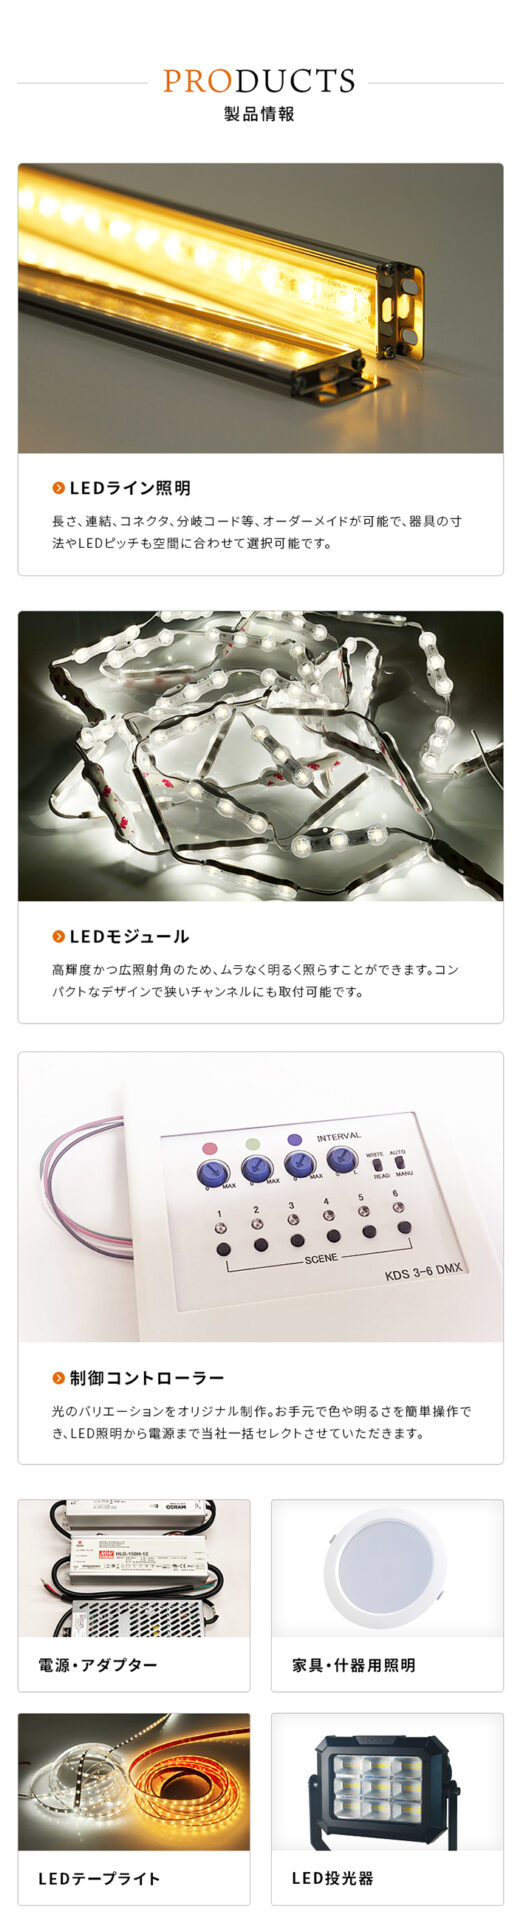 久保田電子設計 コーポレートサイト ウェブ制作実績 アイコンサルティング